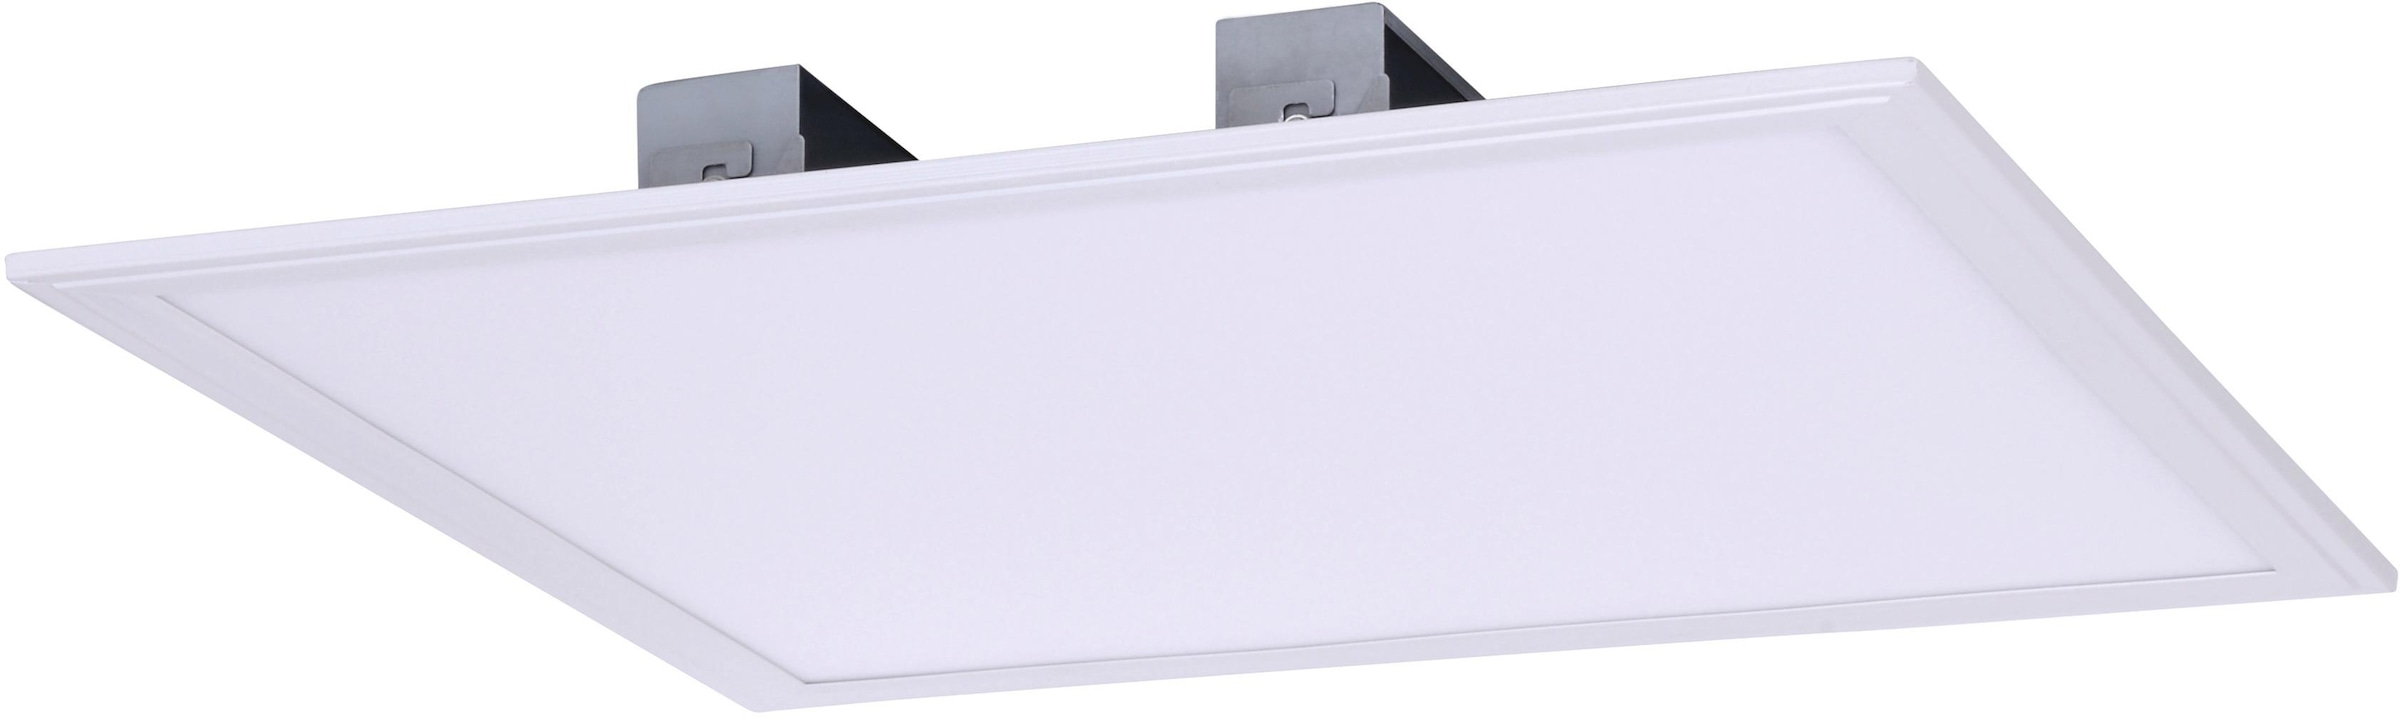 näve LED Panel »PANEL«, LED Aufbaupanel, incl. Treiber, Energieeffizienz:  F, weiß kaufen online bei OTTO | Deckenlampen